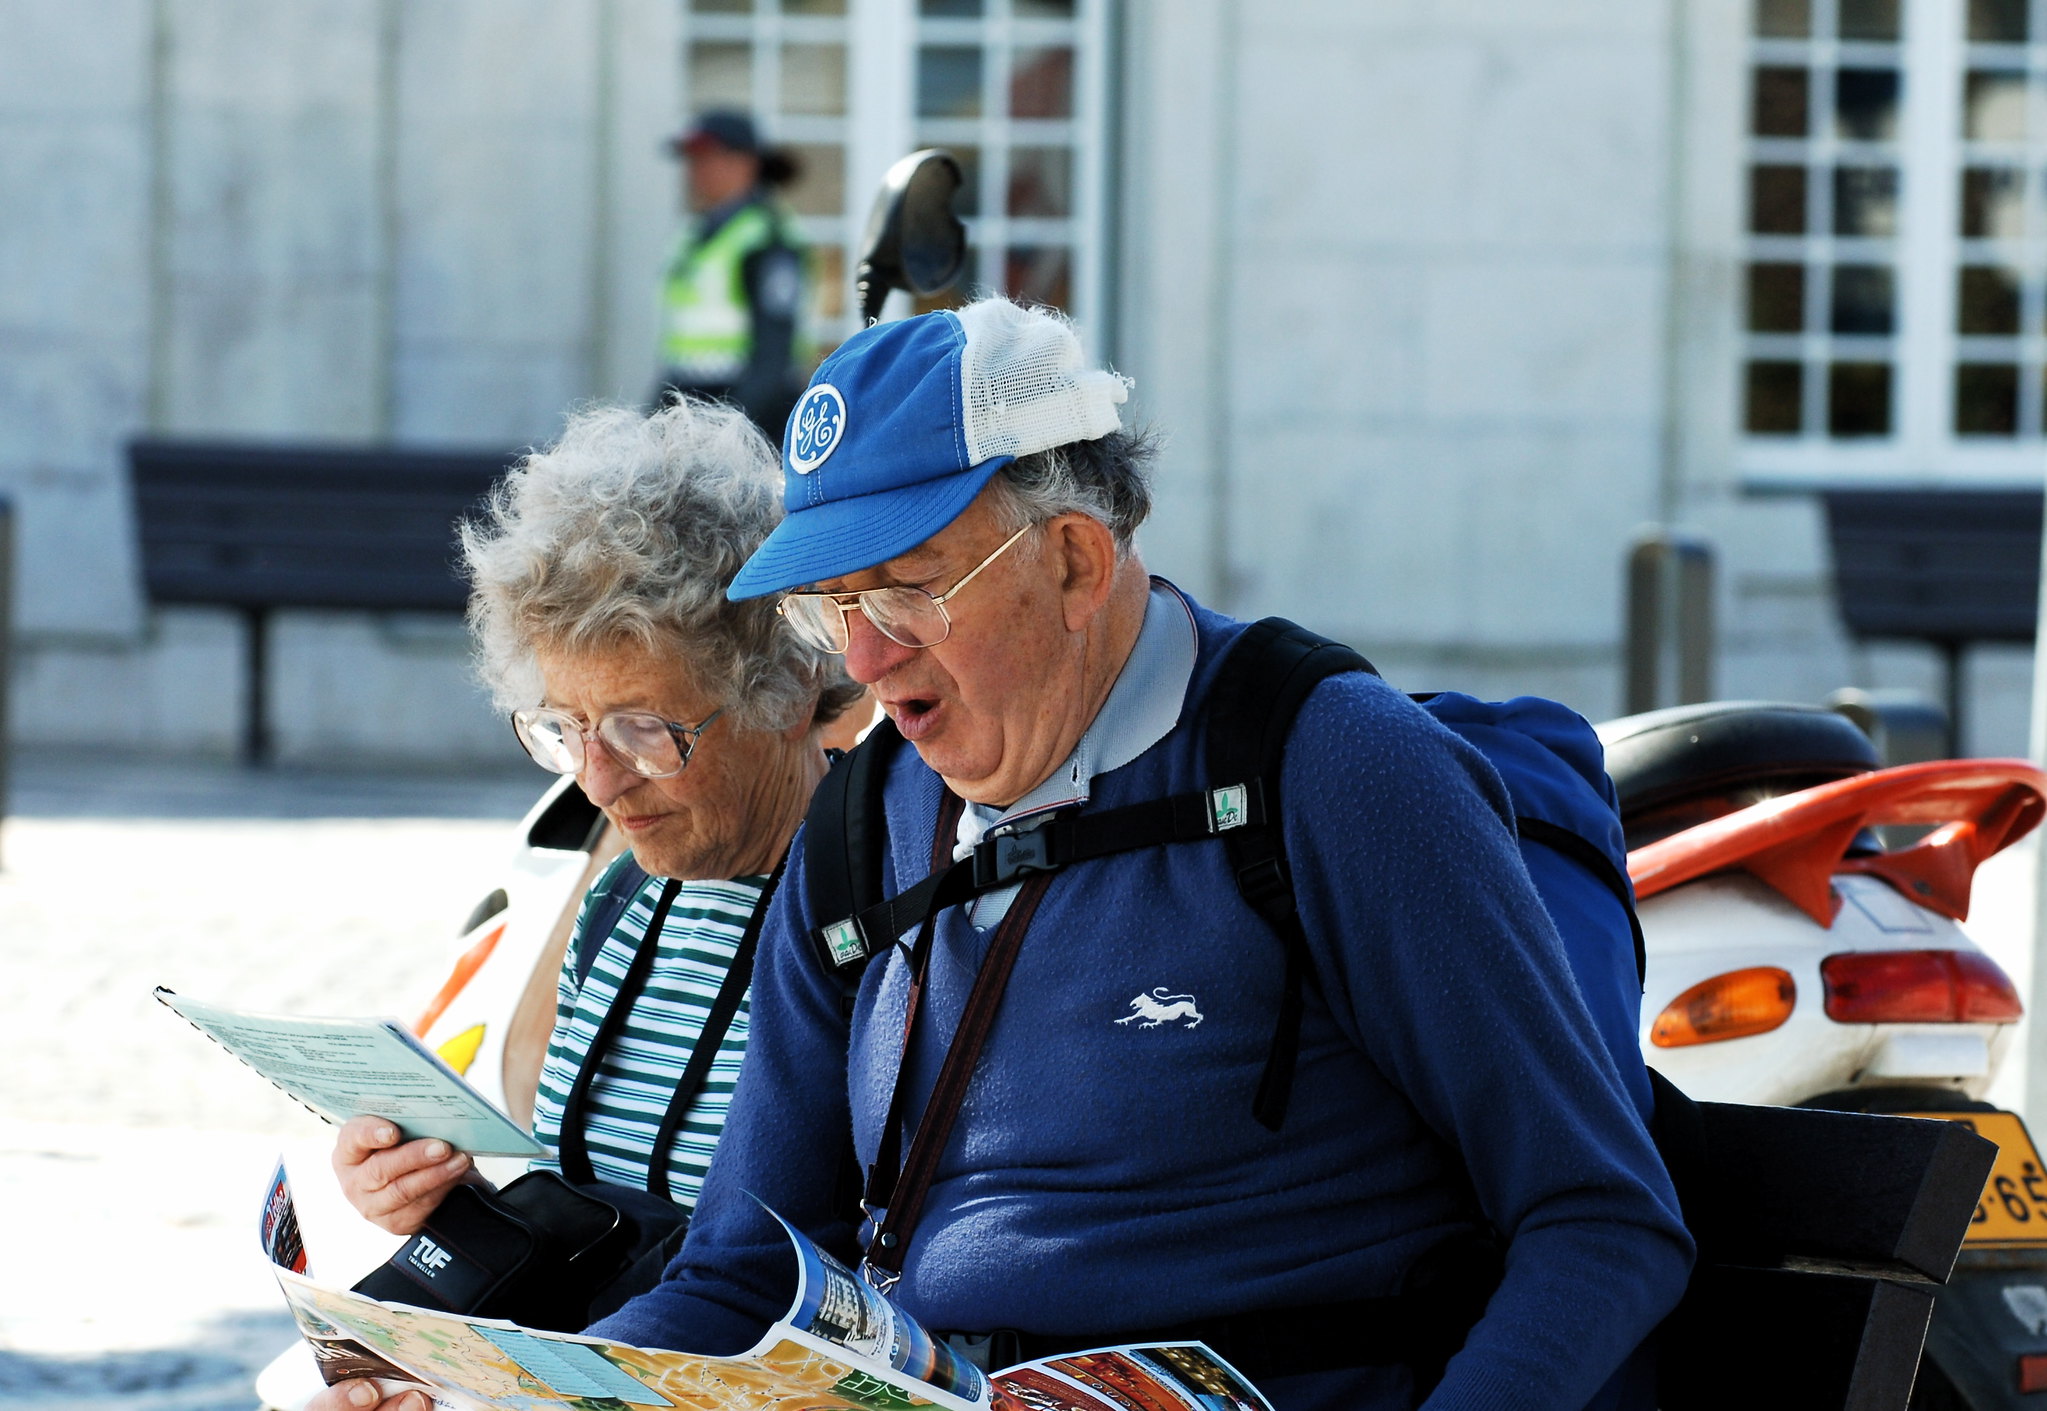 Una pareja de ancianos haciendo turismo juntos | Fuente: flickr